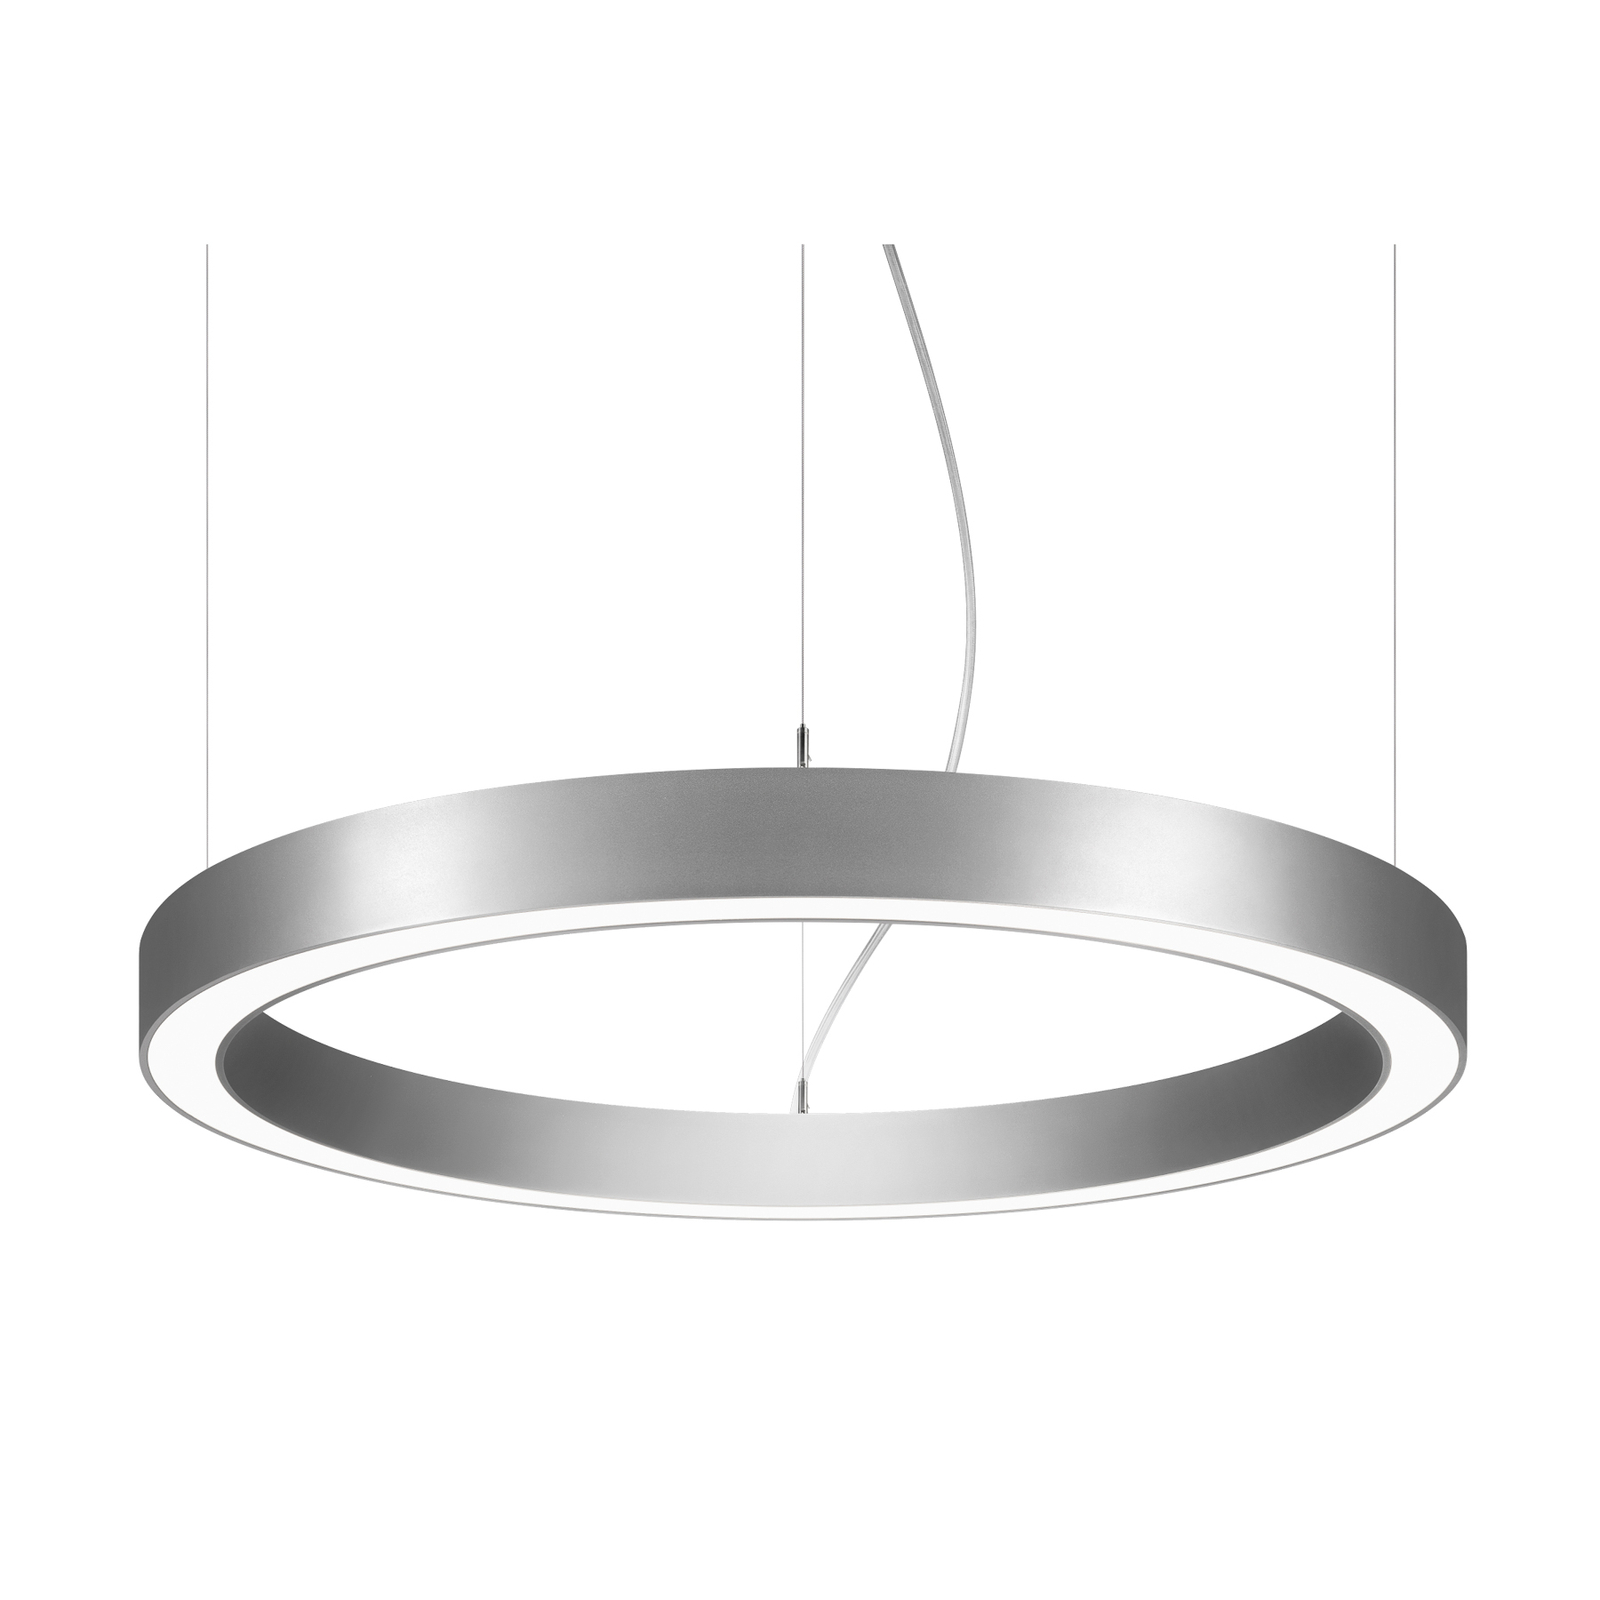 BRUMBERG Biro Circle Ring10 opp/ned Ø 60cm av/på sølv 840